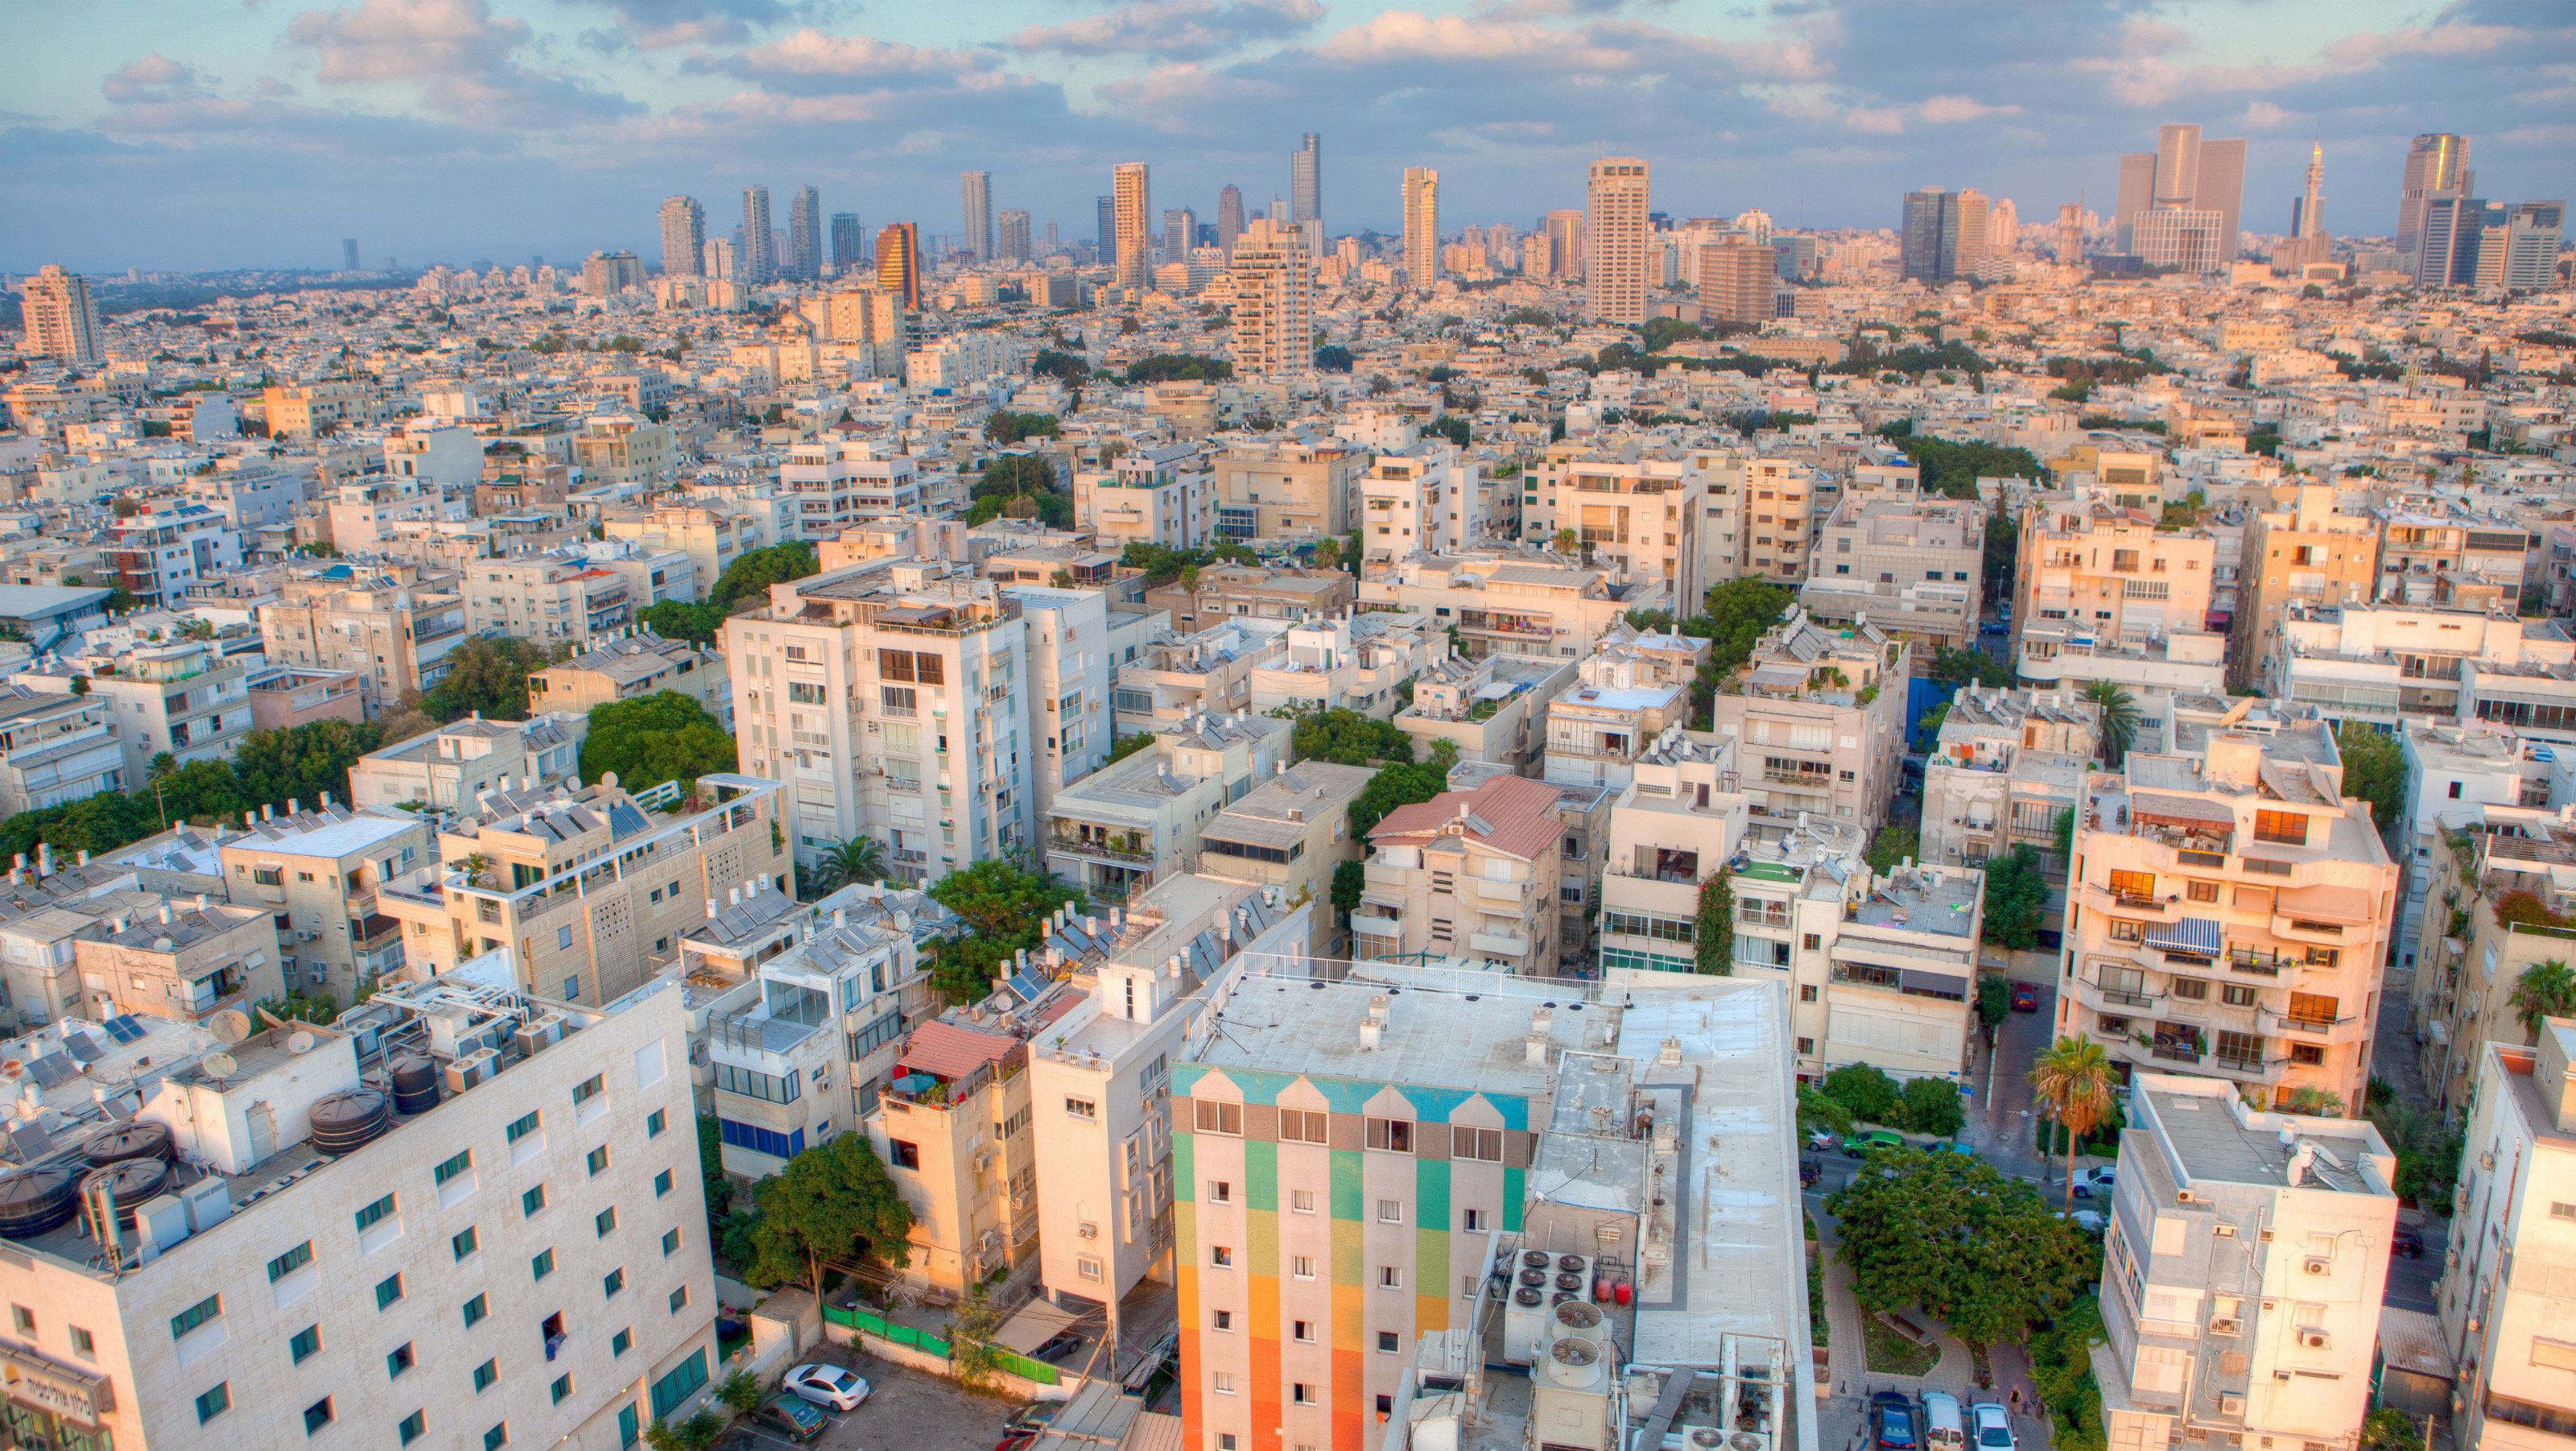 Tel Aviv Hd - Smart Cities In Israel - HD Wallpaper 